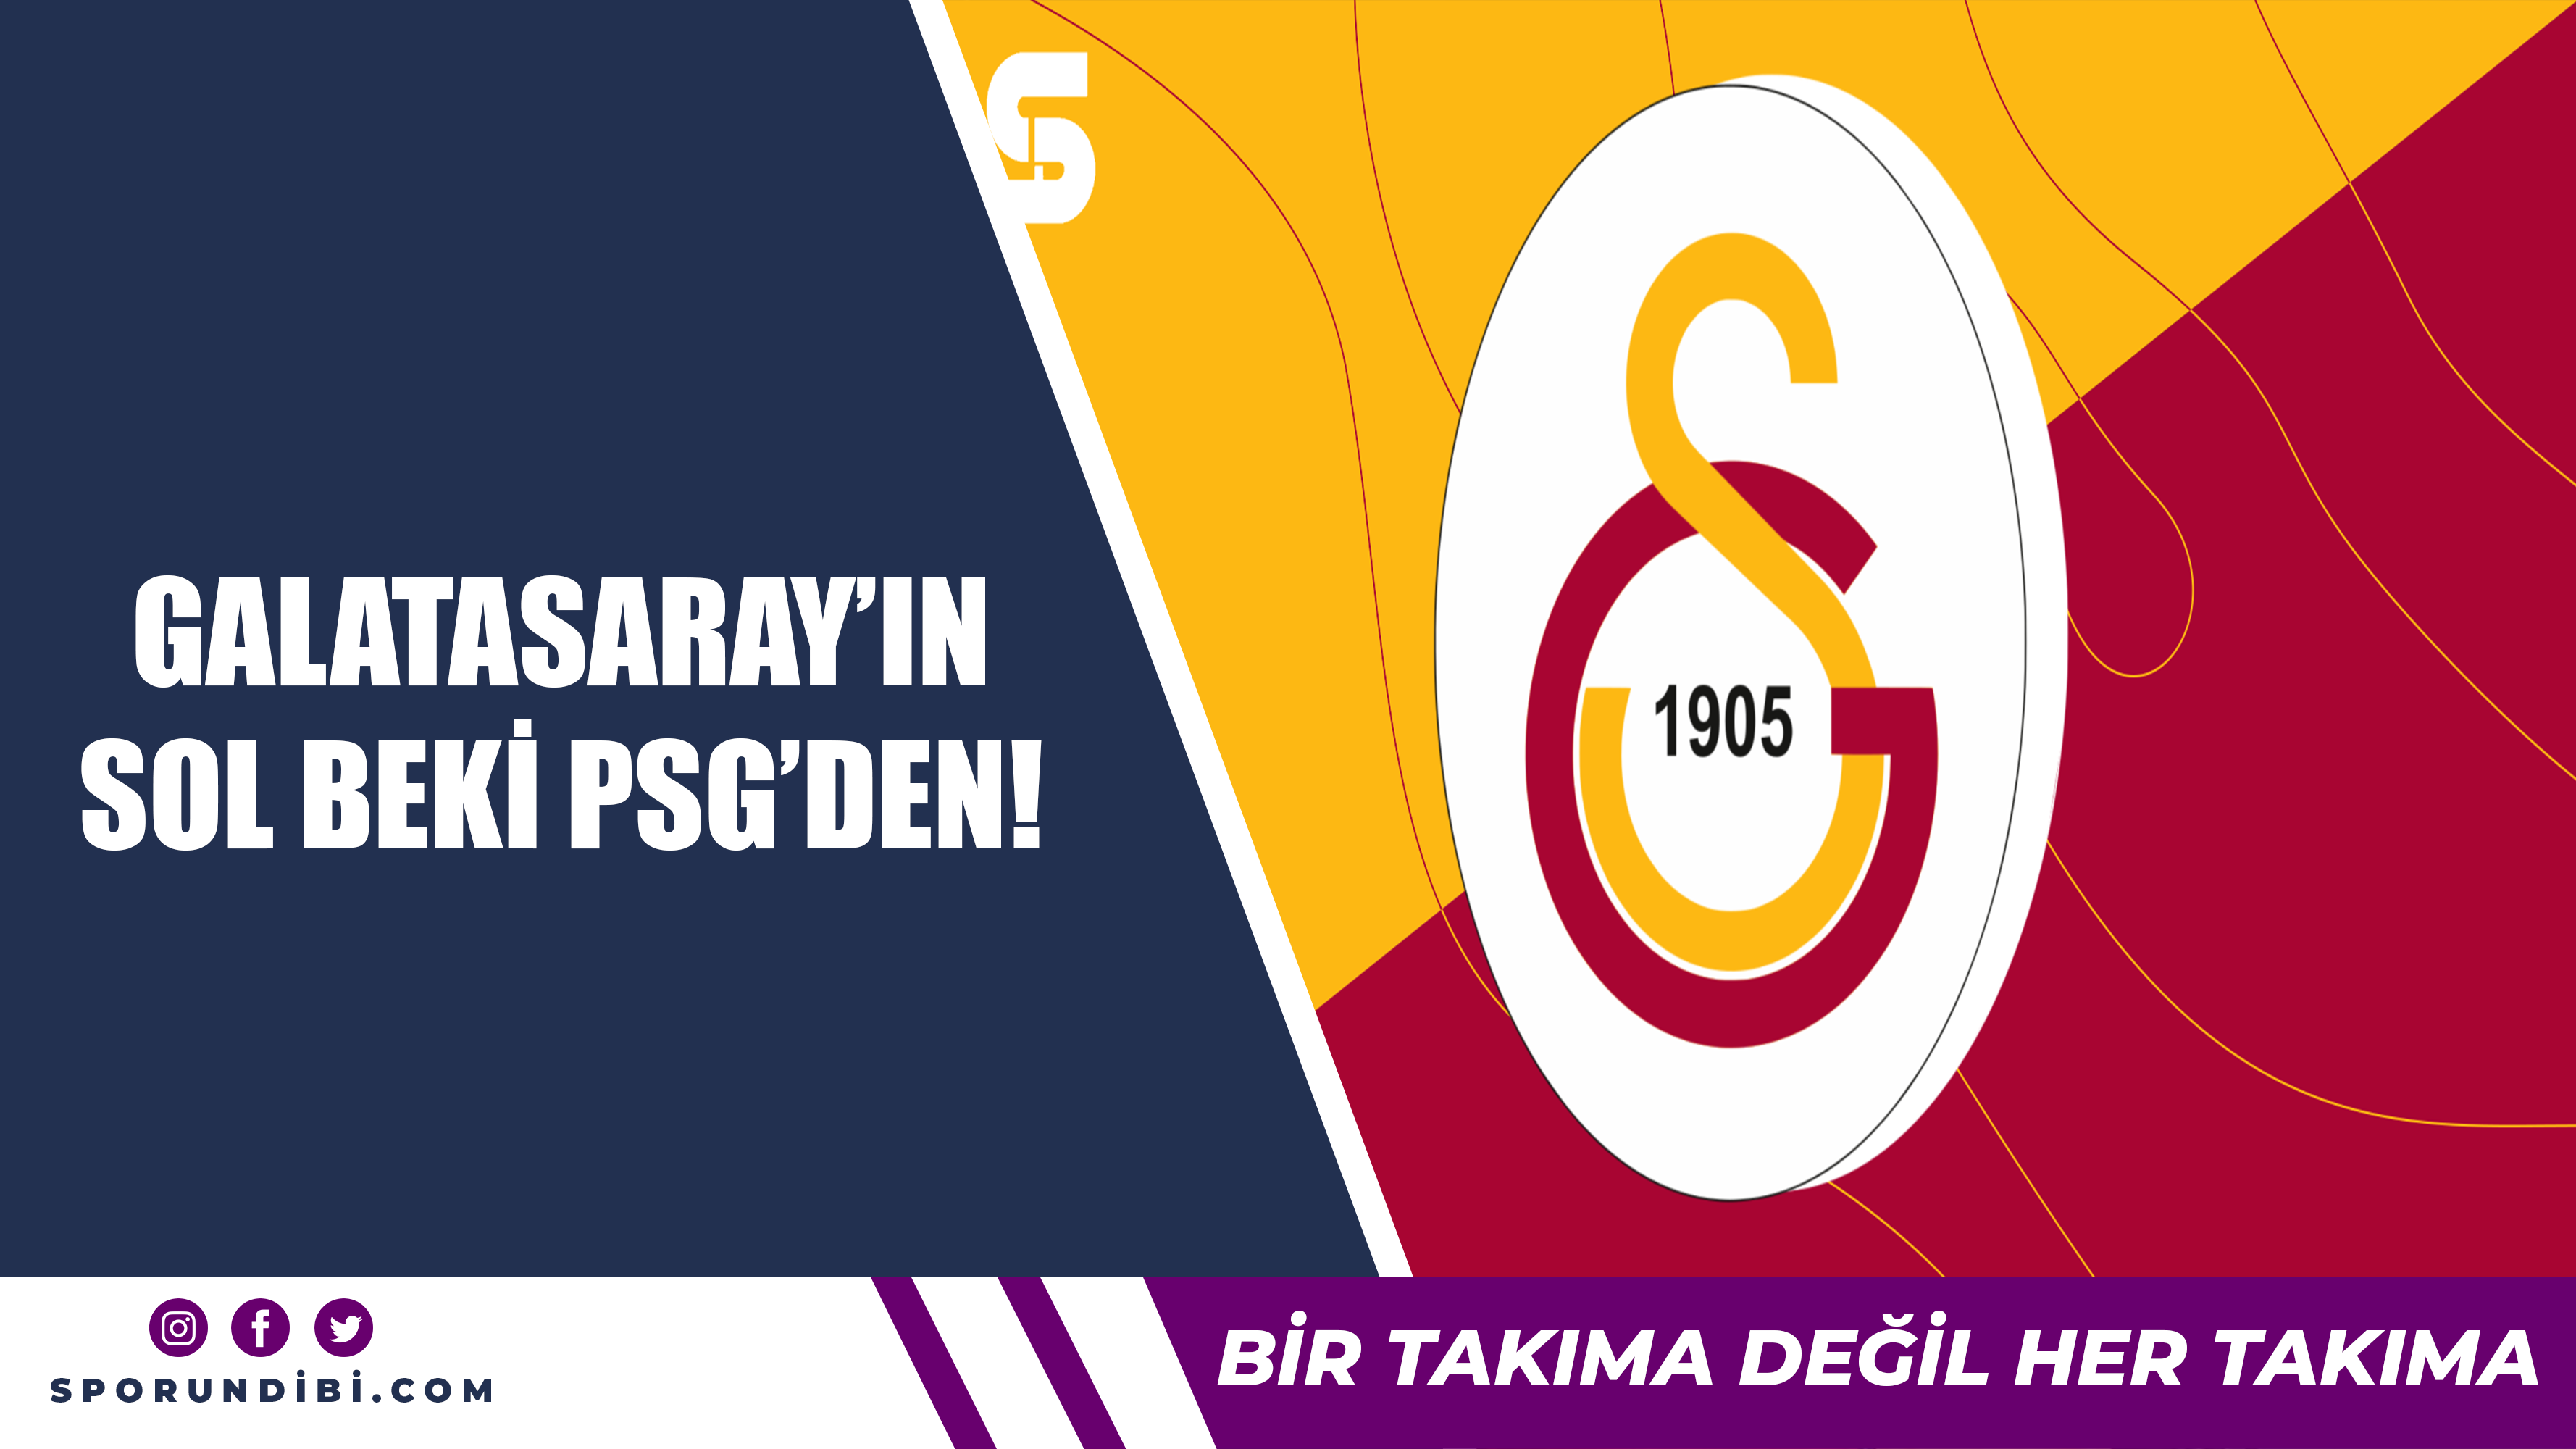 Galatasaray'ın sol beki PSG'den!